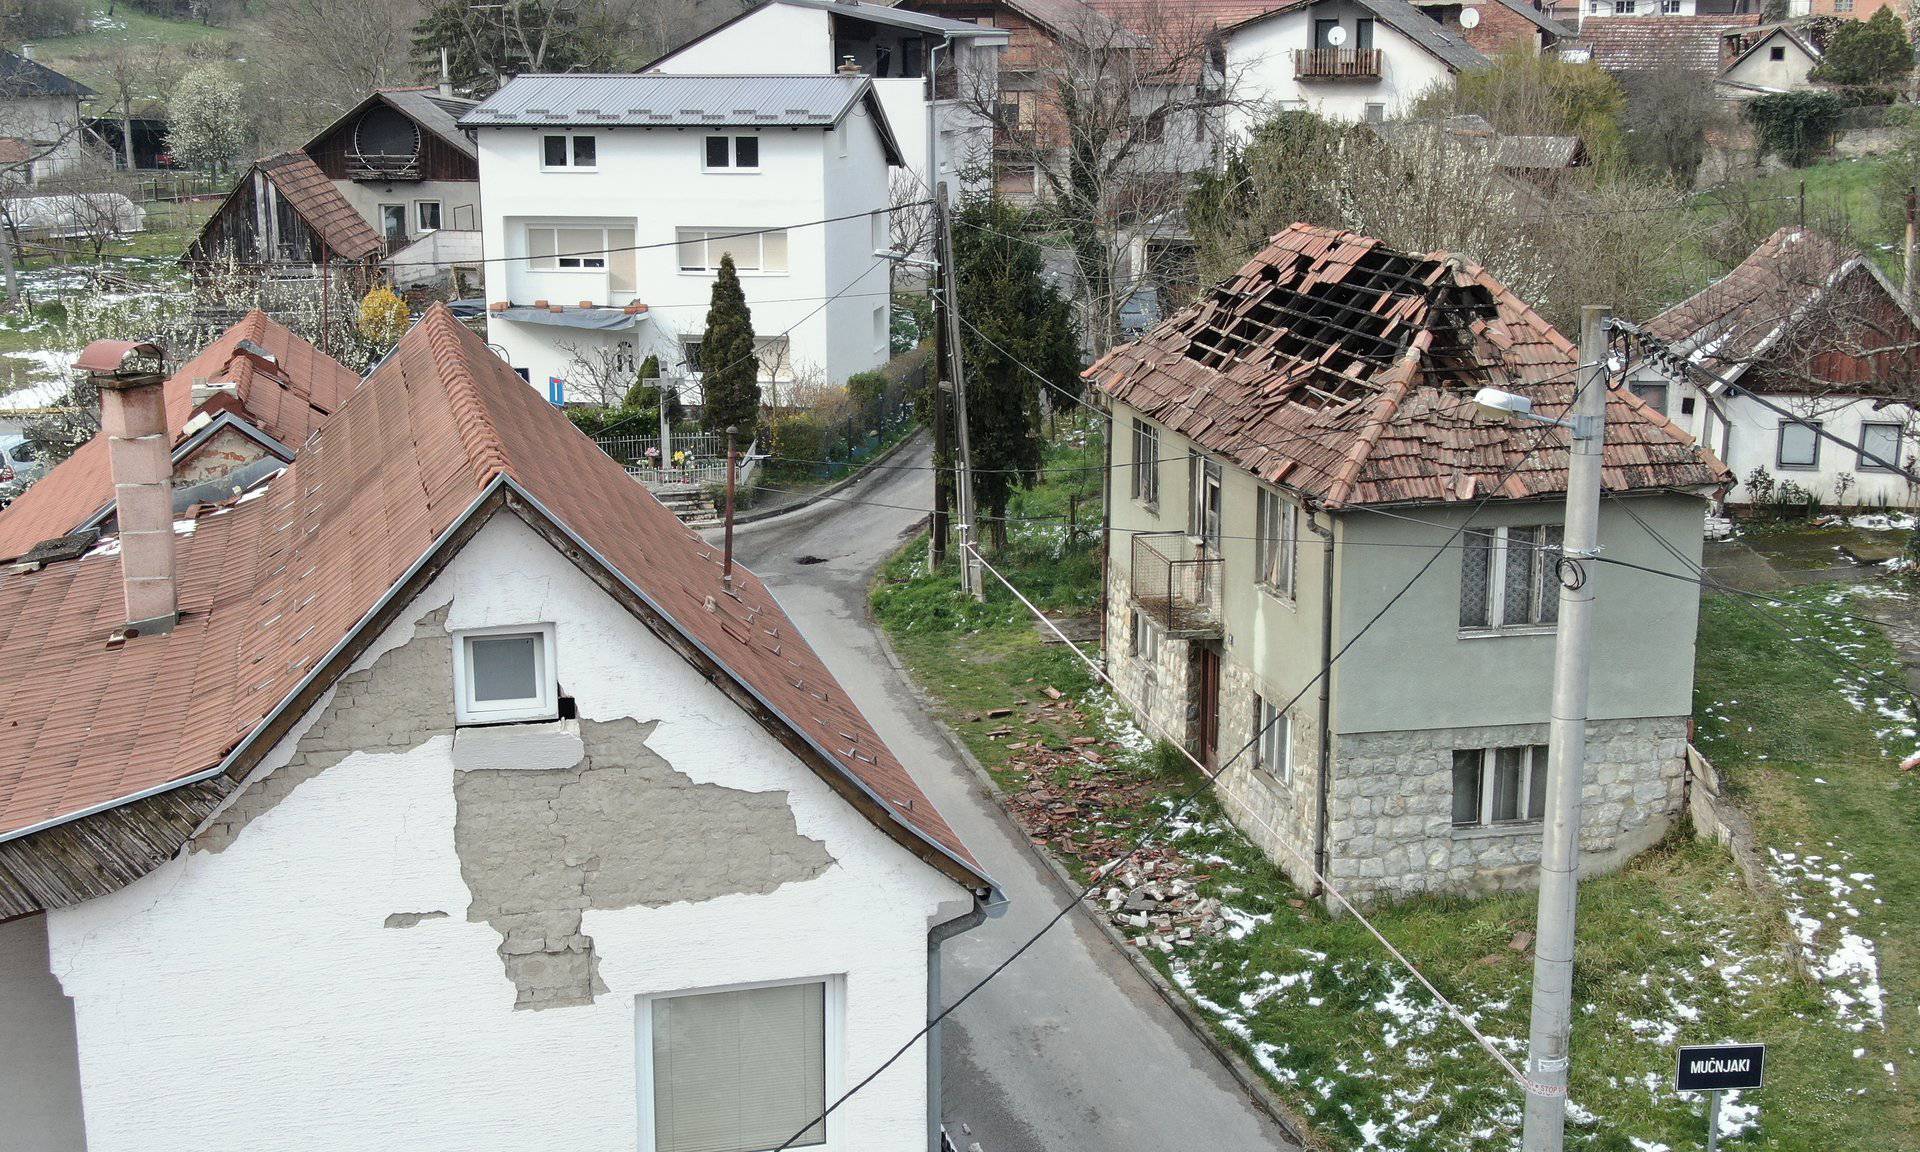 Grad od 4886 stanova nakon potresa na raspolaganje dao 44